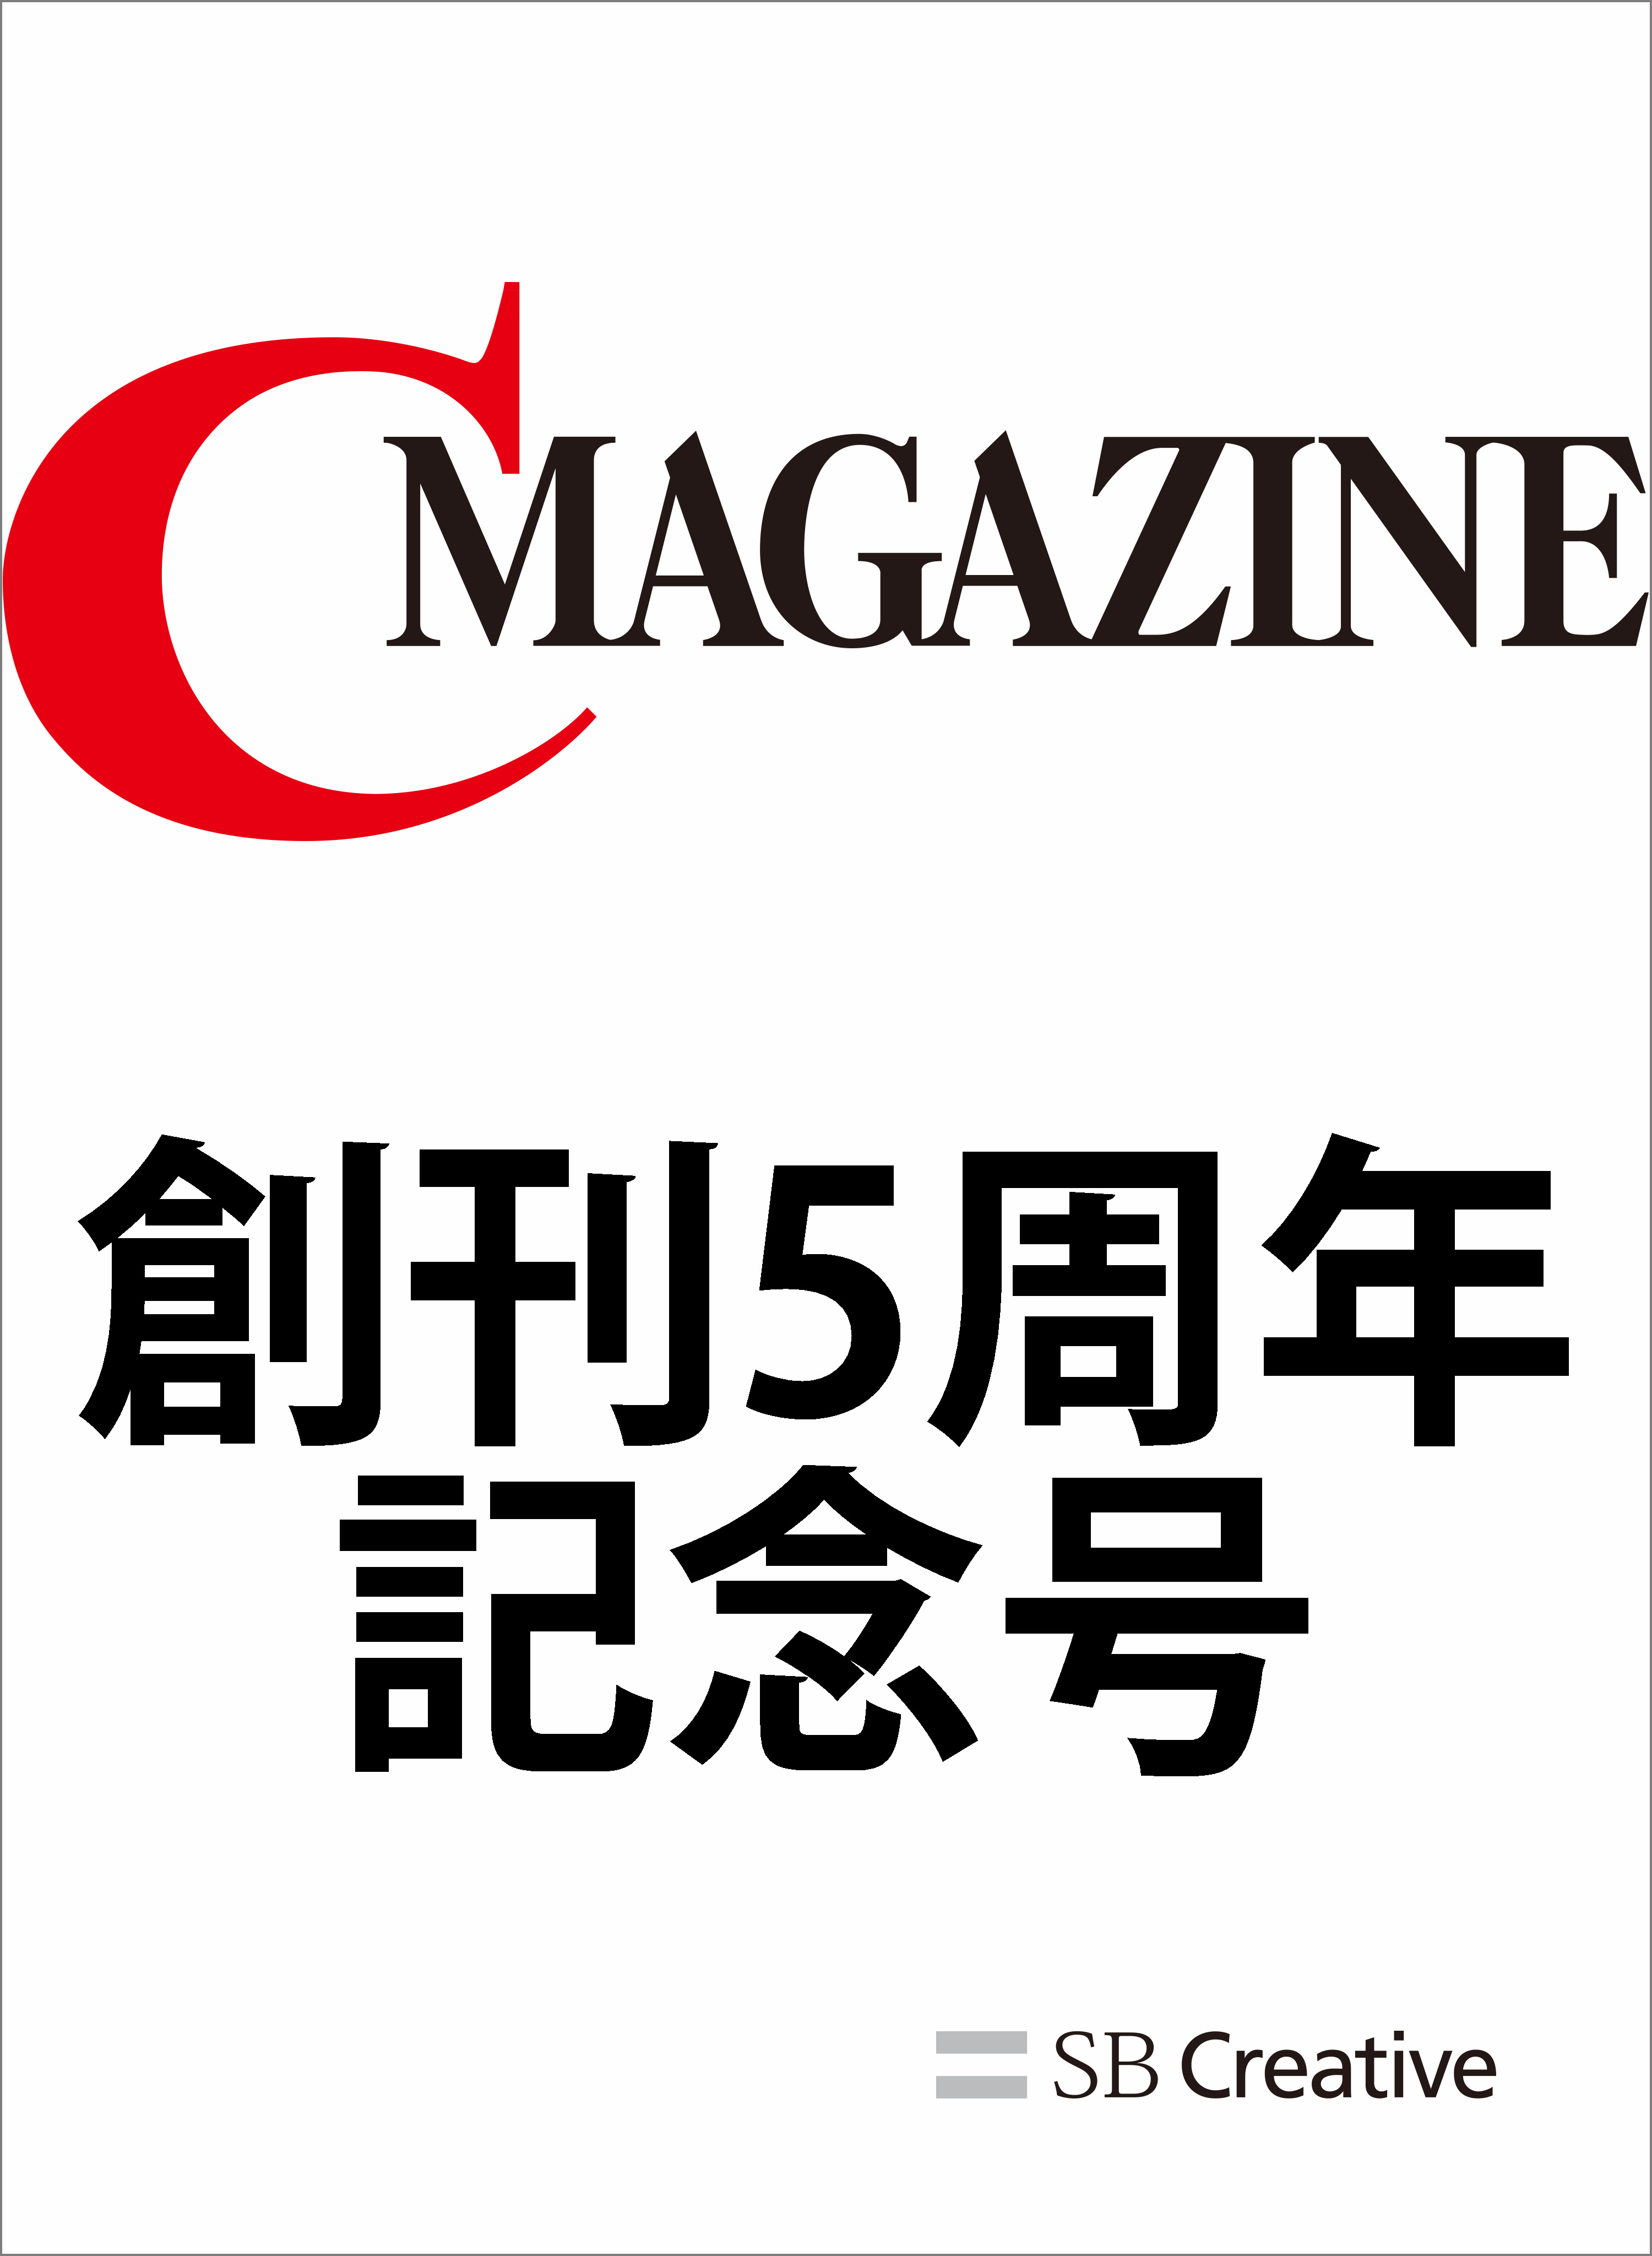 月刊C MAGAZINE 創刊5周年記念号 - CMAGAZINE編集部 - 漫画・無料試し